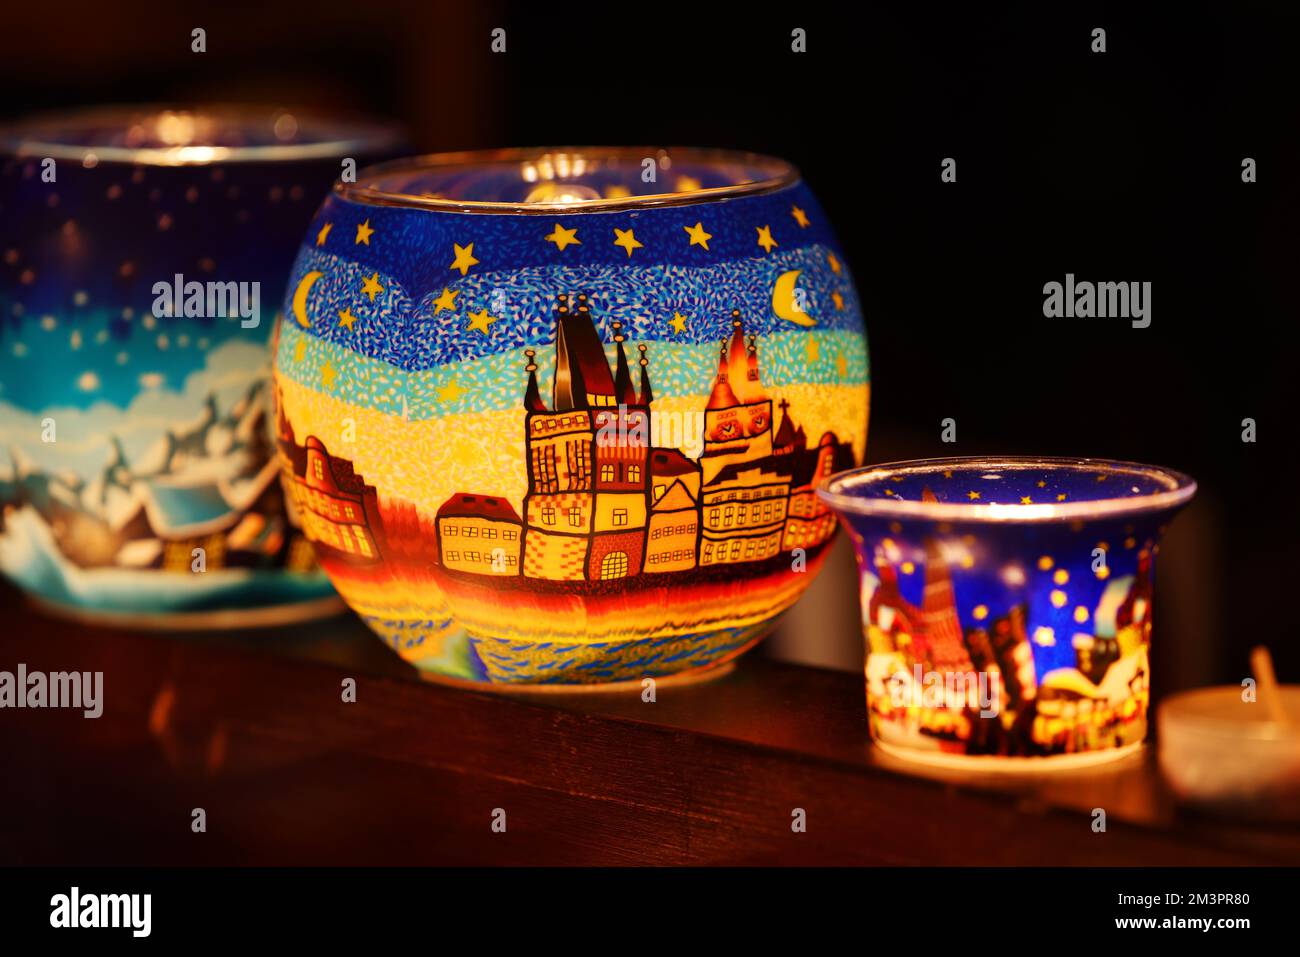 Teelichter, Glas, Nürnberg, Nürnberger Weihnachtsmarkt, Nürnberger Christkindlesmarkt, mit Engeln, Anhänger, Kugeln, Glühwein und vielen Grillsachen! Stock Photo